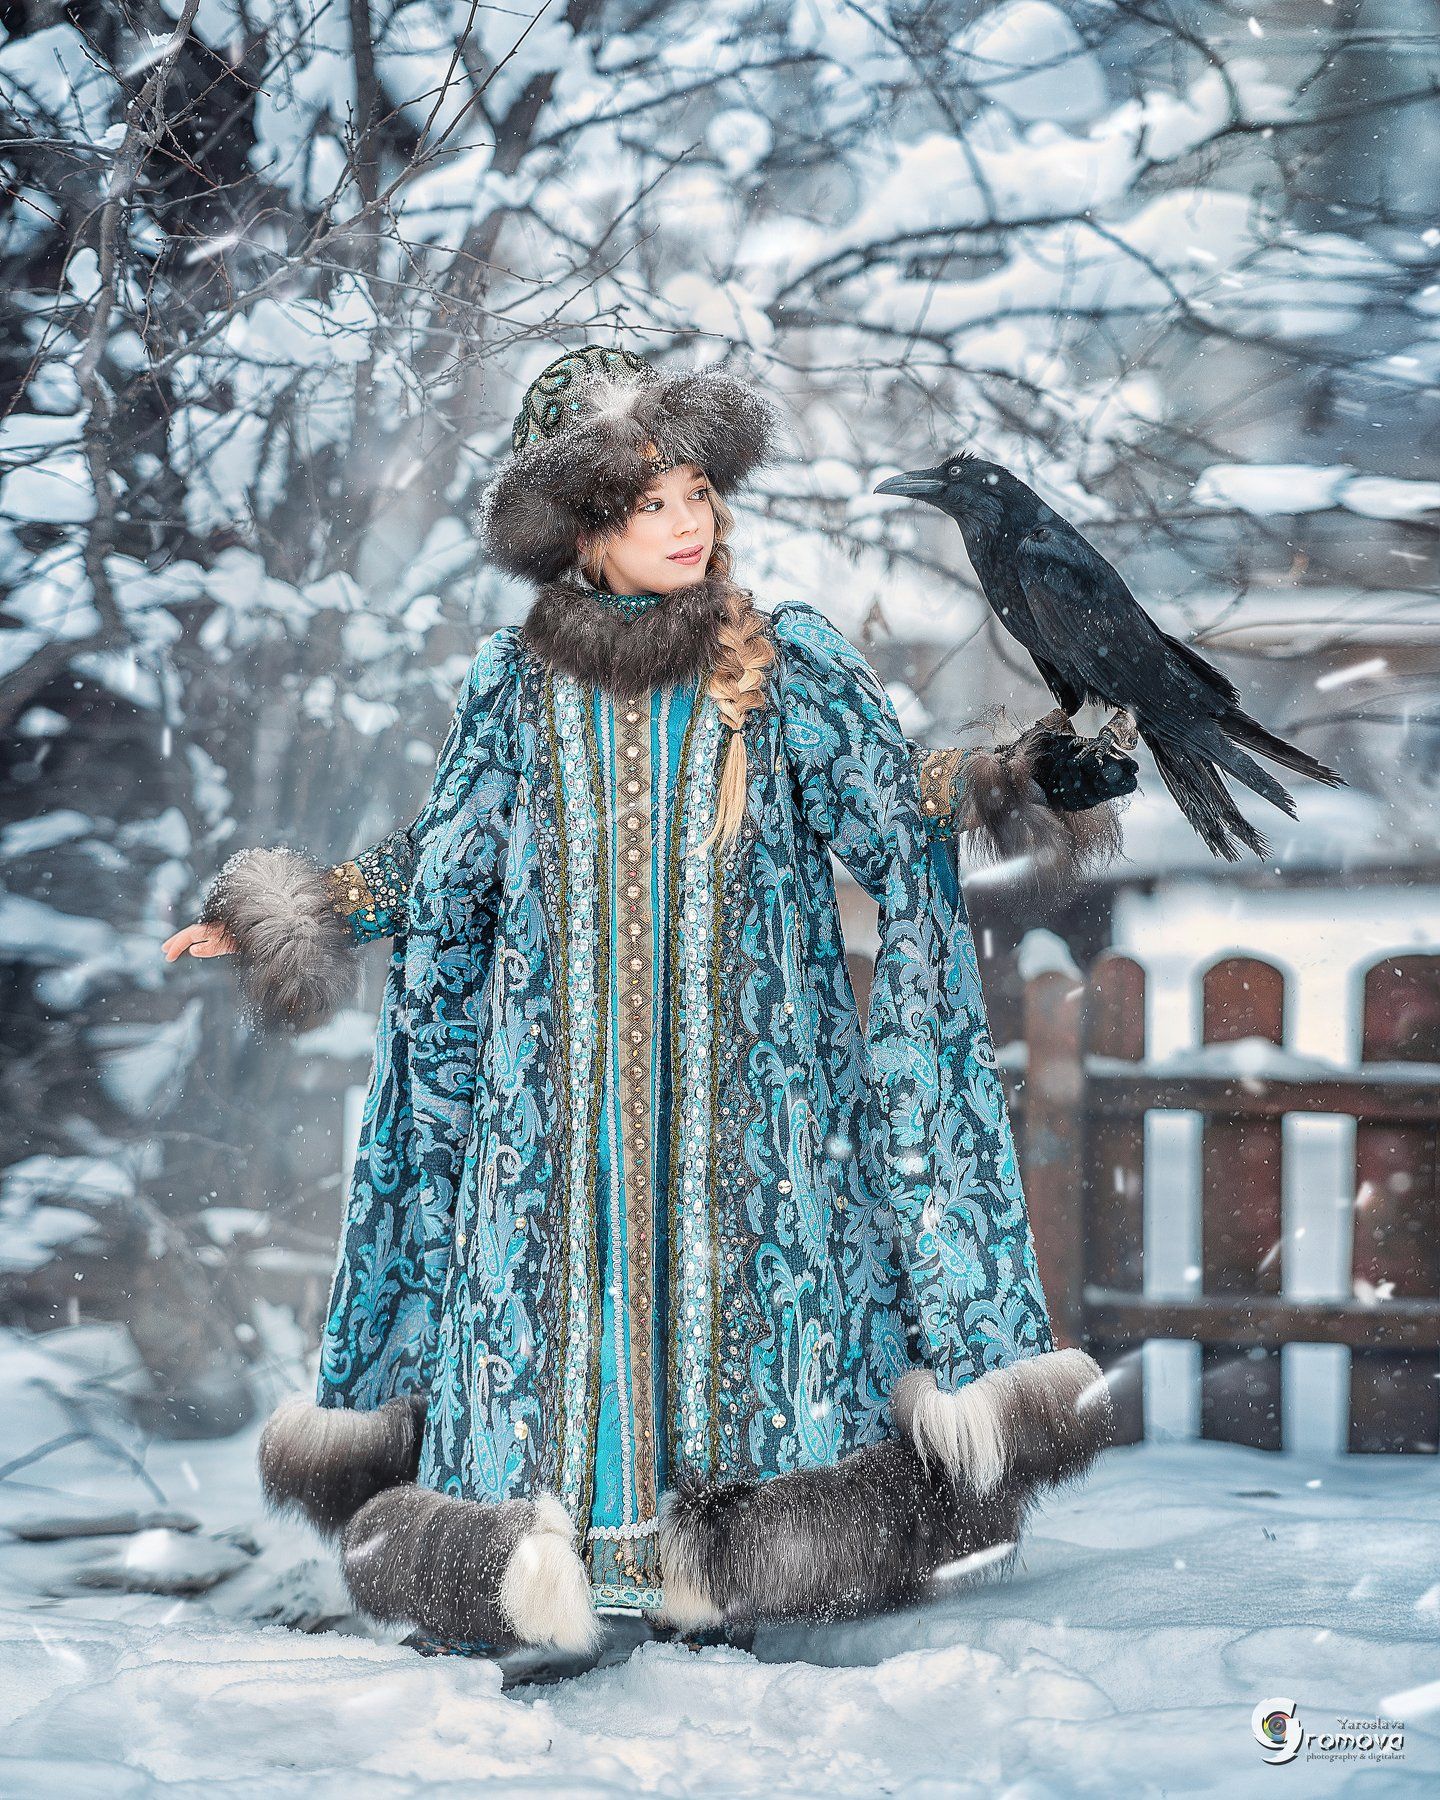 княжна, принцесса, ворон, ворона, снег, зима, сказка, Ярослава Громова